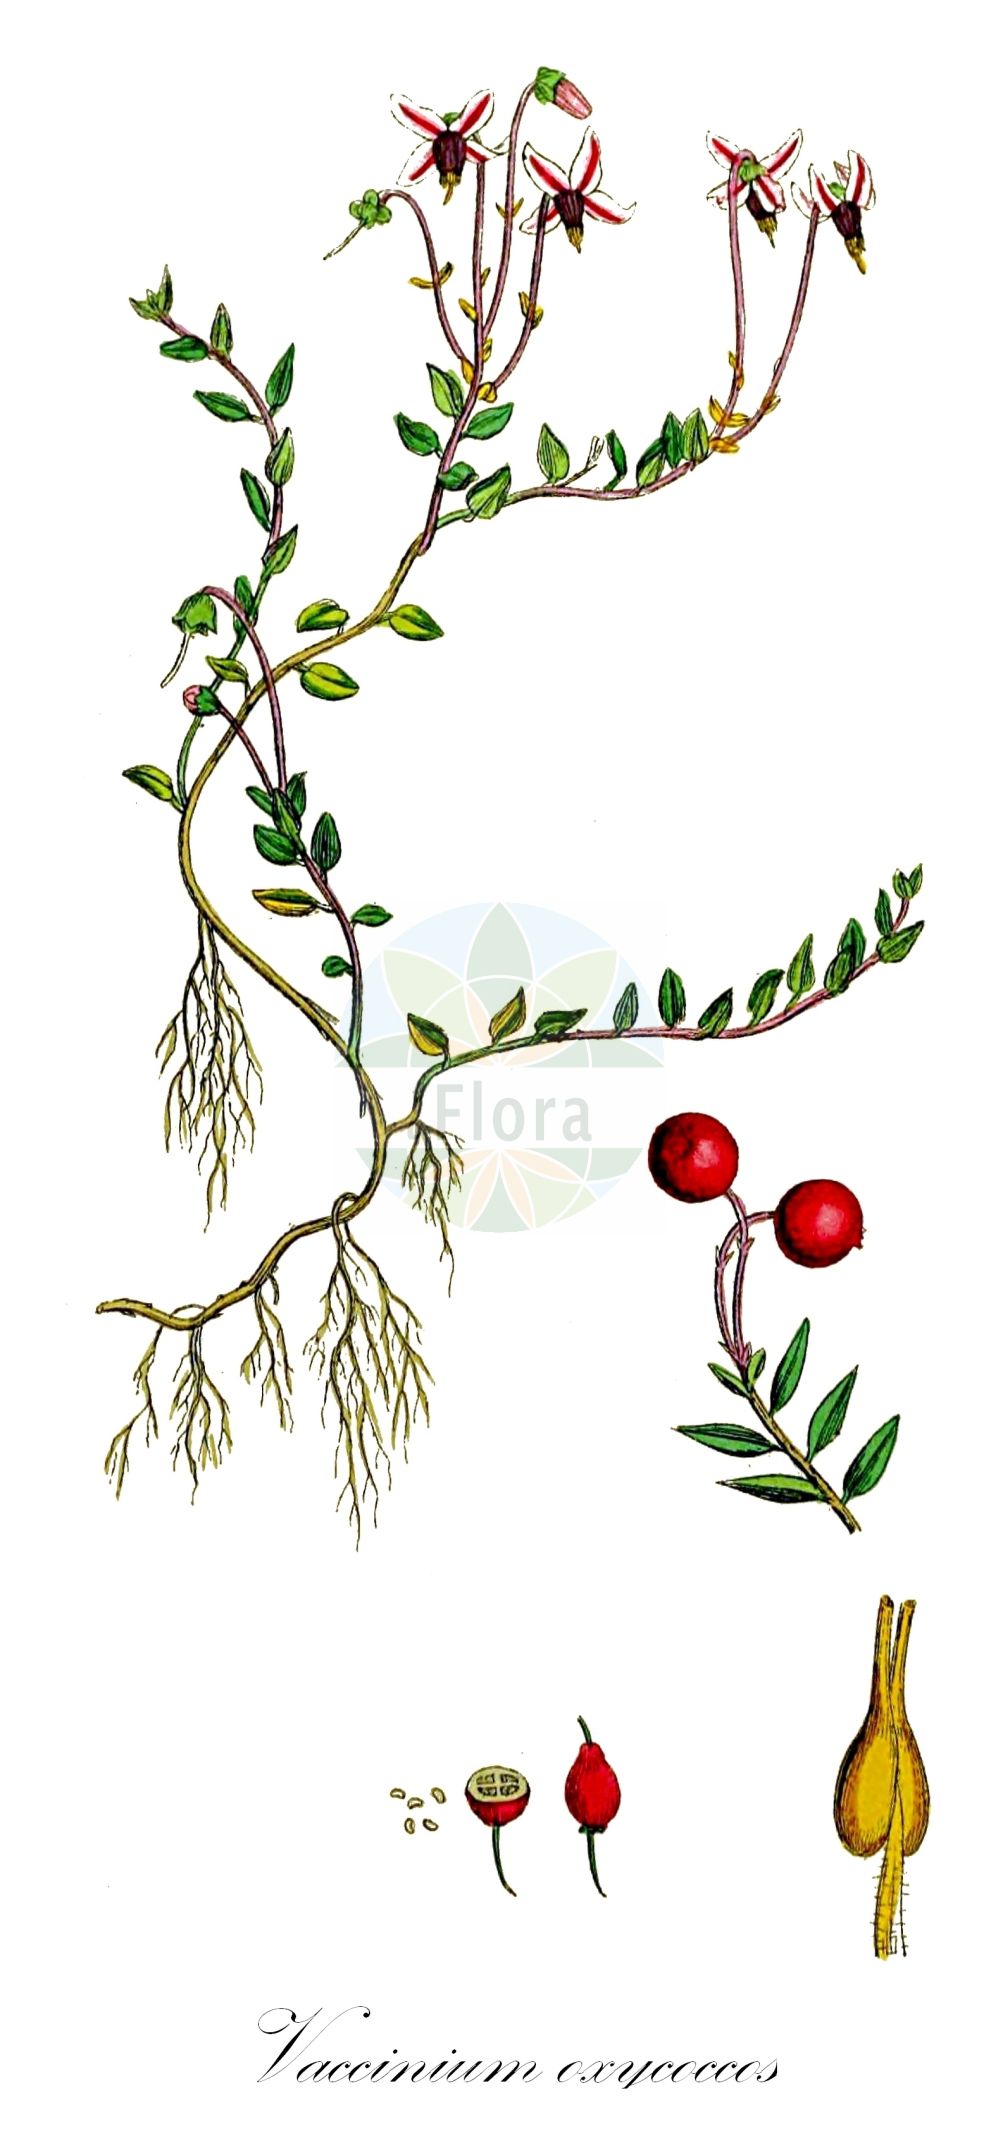 Historische Abbildung von Vaccinium oxycoccos (Gewöhnliche Moosbeere - Cranberry). Das Bild zeigt Blatt, Bluete, Frucht und Same. ---- Historical Drawing of Vaccinium oxycoccos (Gewöhnliche Moosbeere - Cranberry). The image is showing leaf, flower, fruit and seed.(Vaccinium oxycoccos,Gewöhnliche Moosbeere,Cranberry,Oxycoccus palustris,Oxycoccus quadripetalus,Vaccinium oxycoccos,Gewoehnliche Moosbeere,Cranberry,European Cranberry,Mossberry,Small Cranberry,Vaccinium,Heidelbeere,Blueberry,Ericaceae,Heidekrautgewächse,Heath family,Blatt,Bluete,Frucht,Same,leaf,flower,fruit,seed,Sowerby (1790-1813))